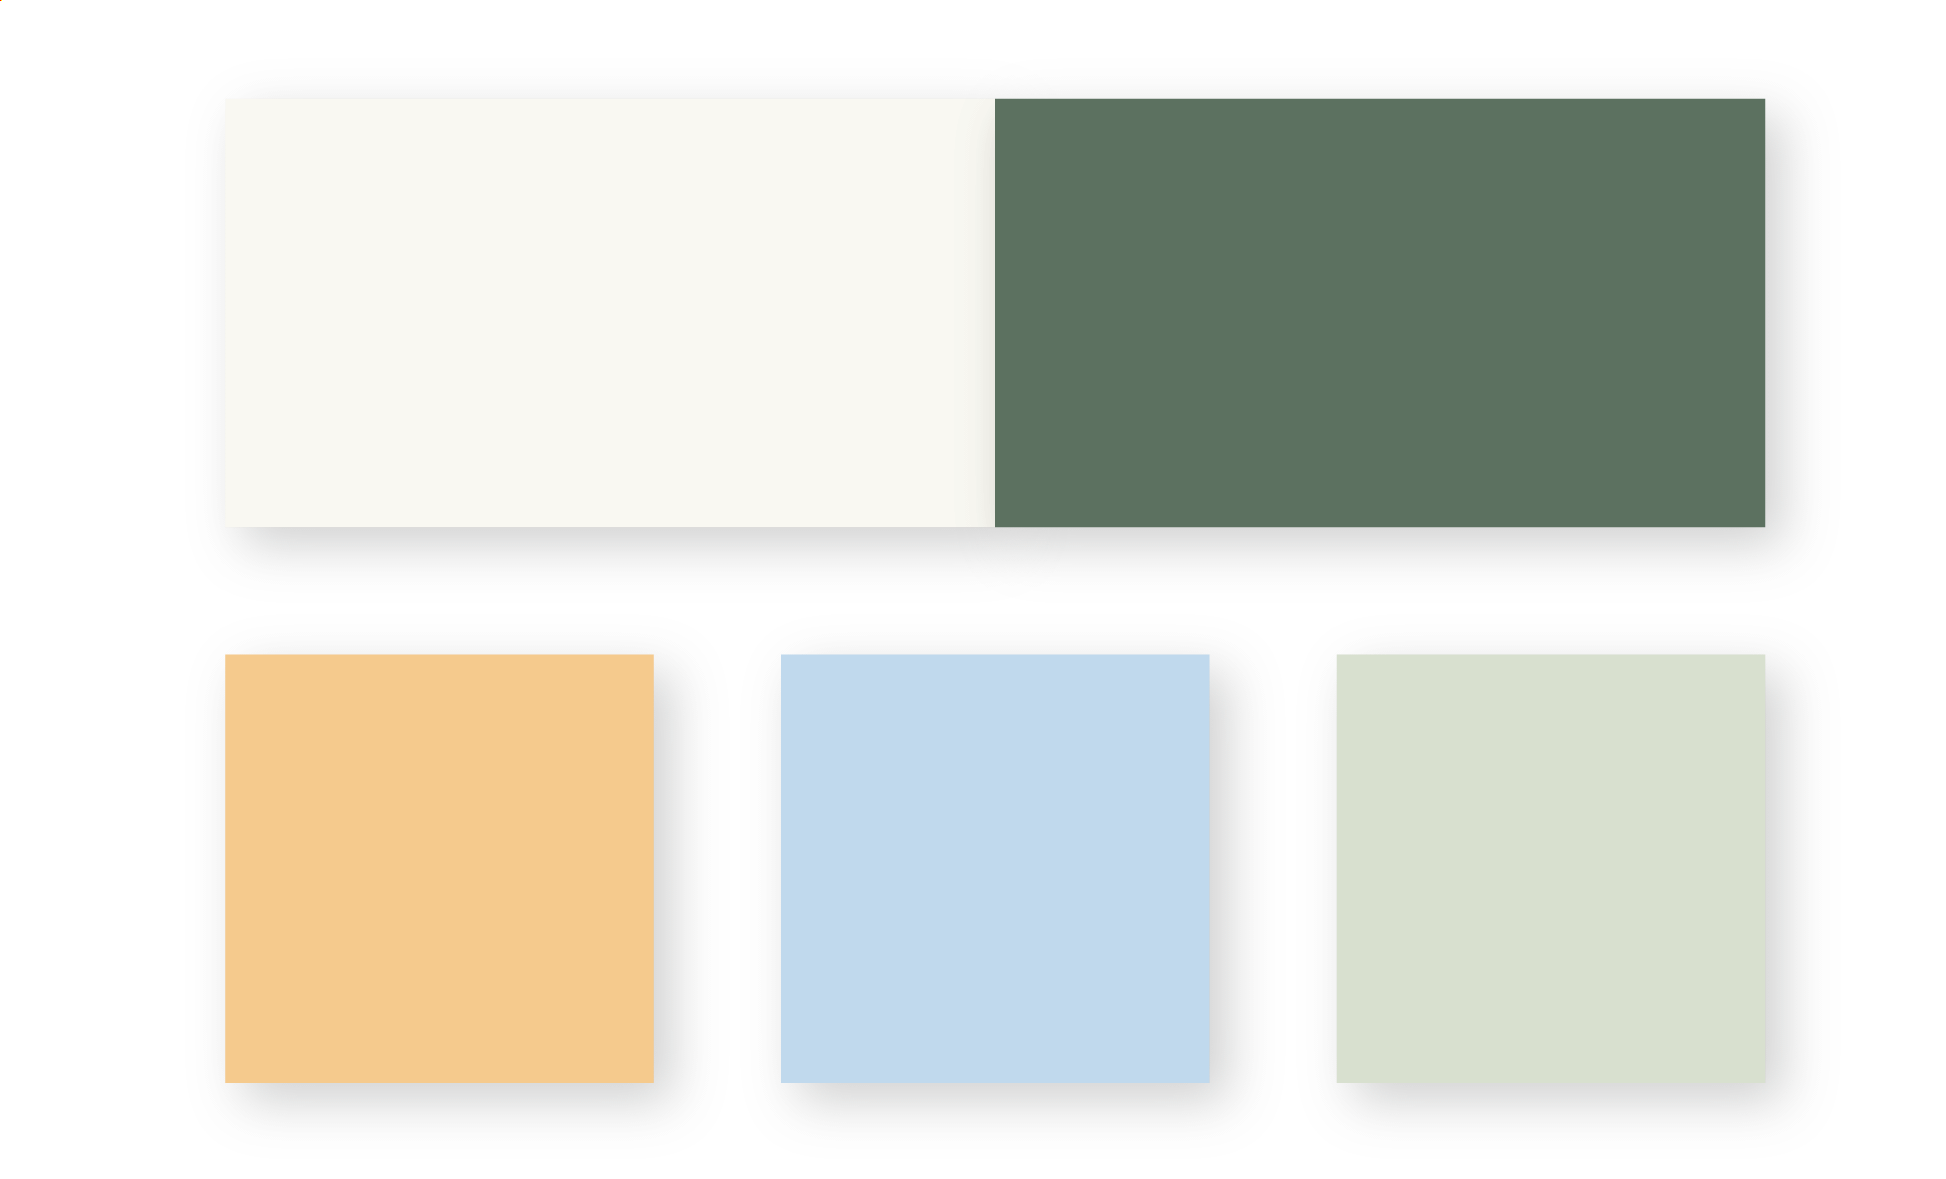 Farger som er benyttet i den grafiske profilen til Fra Nittedal, bruk av lys beige, mørk grønn, oransje, lys blå og lys grønn.